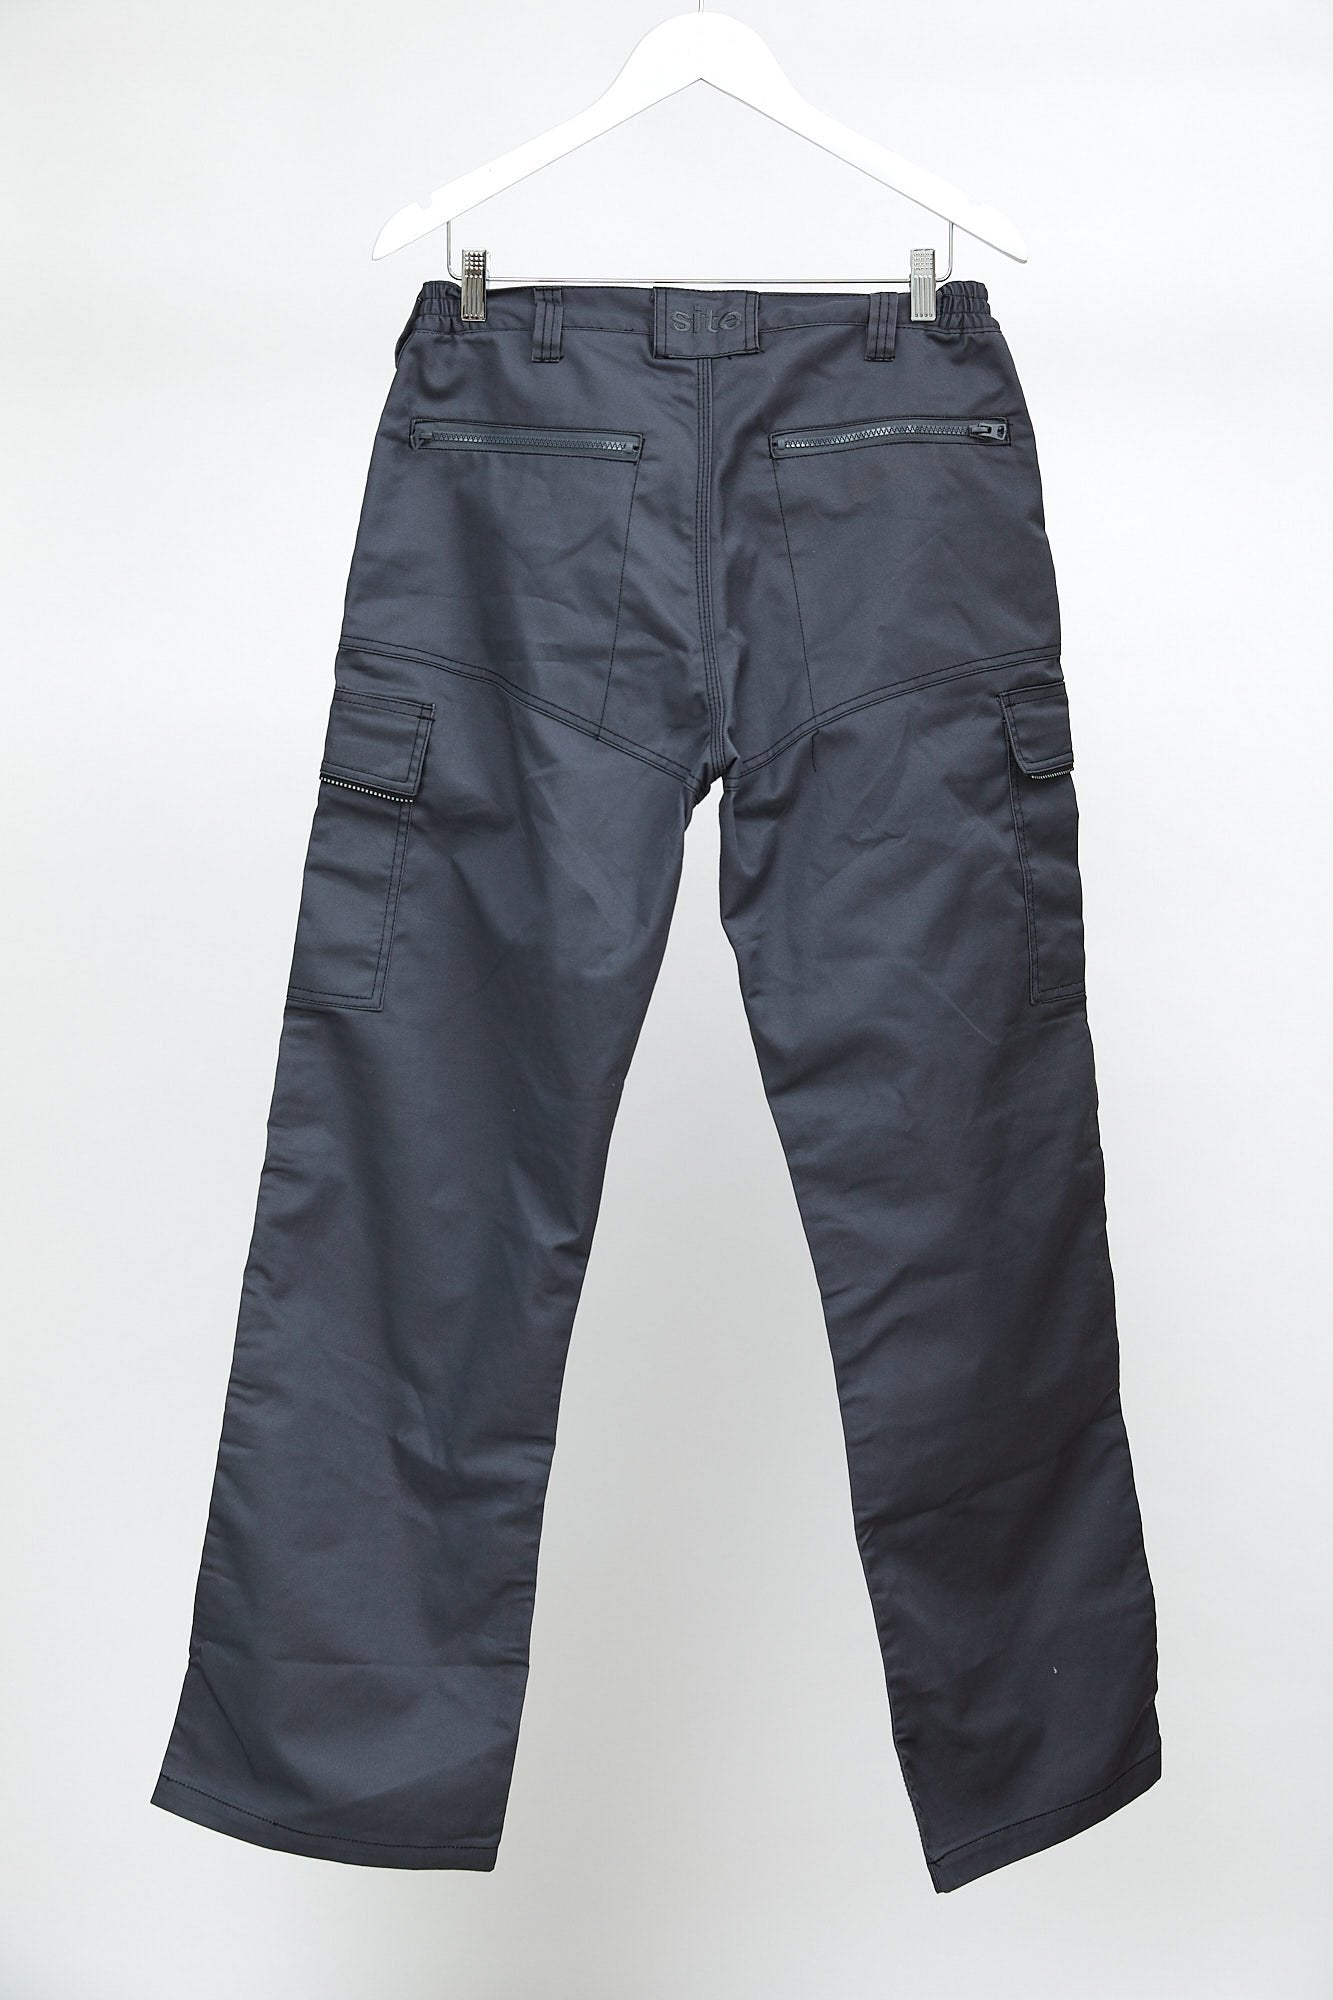 Mens Grey Workwear Trousers: Size W32